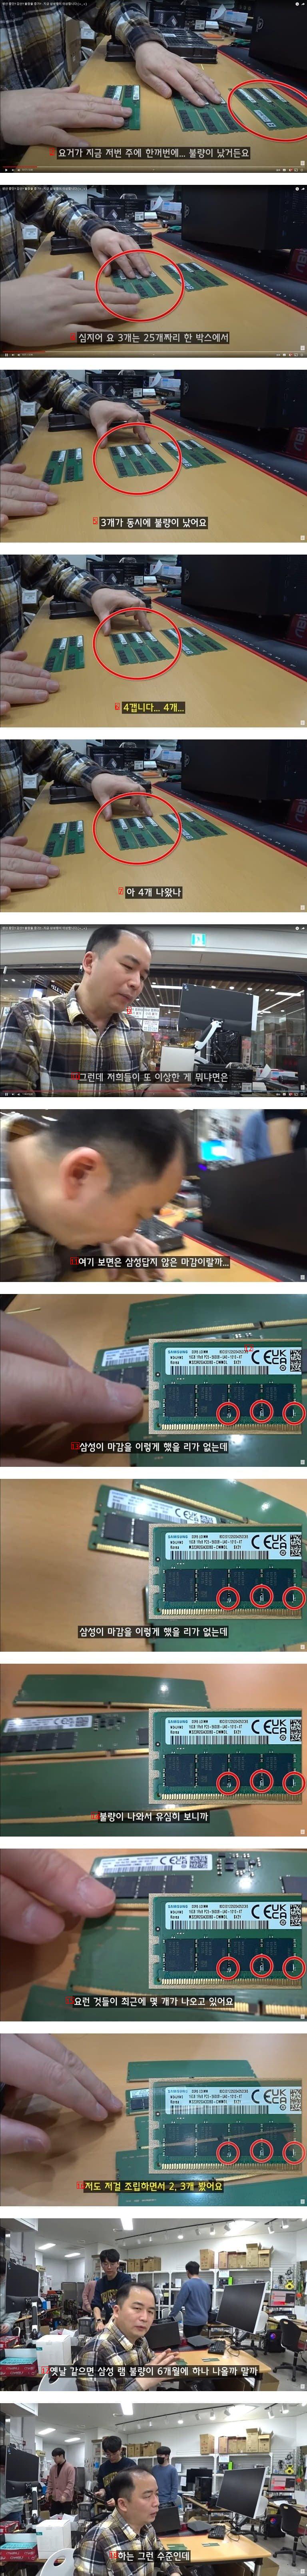 삼성 램 DDR5불량이 많다 함 => 4만원대 전자 간다고 봅니다